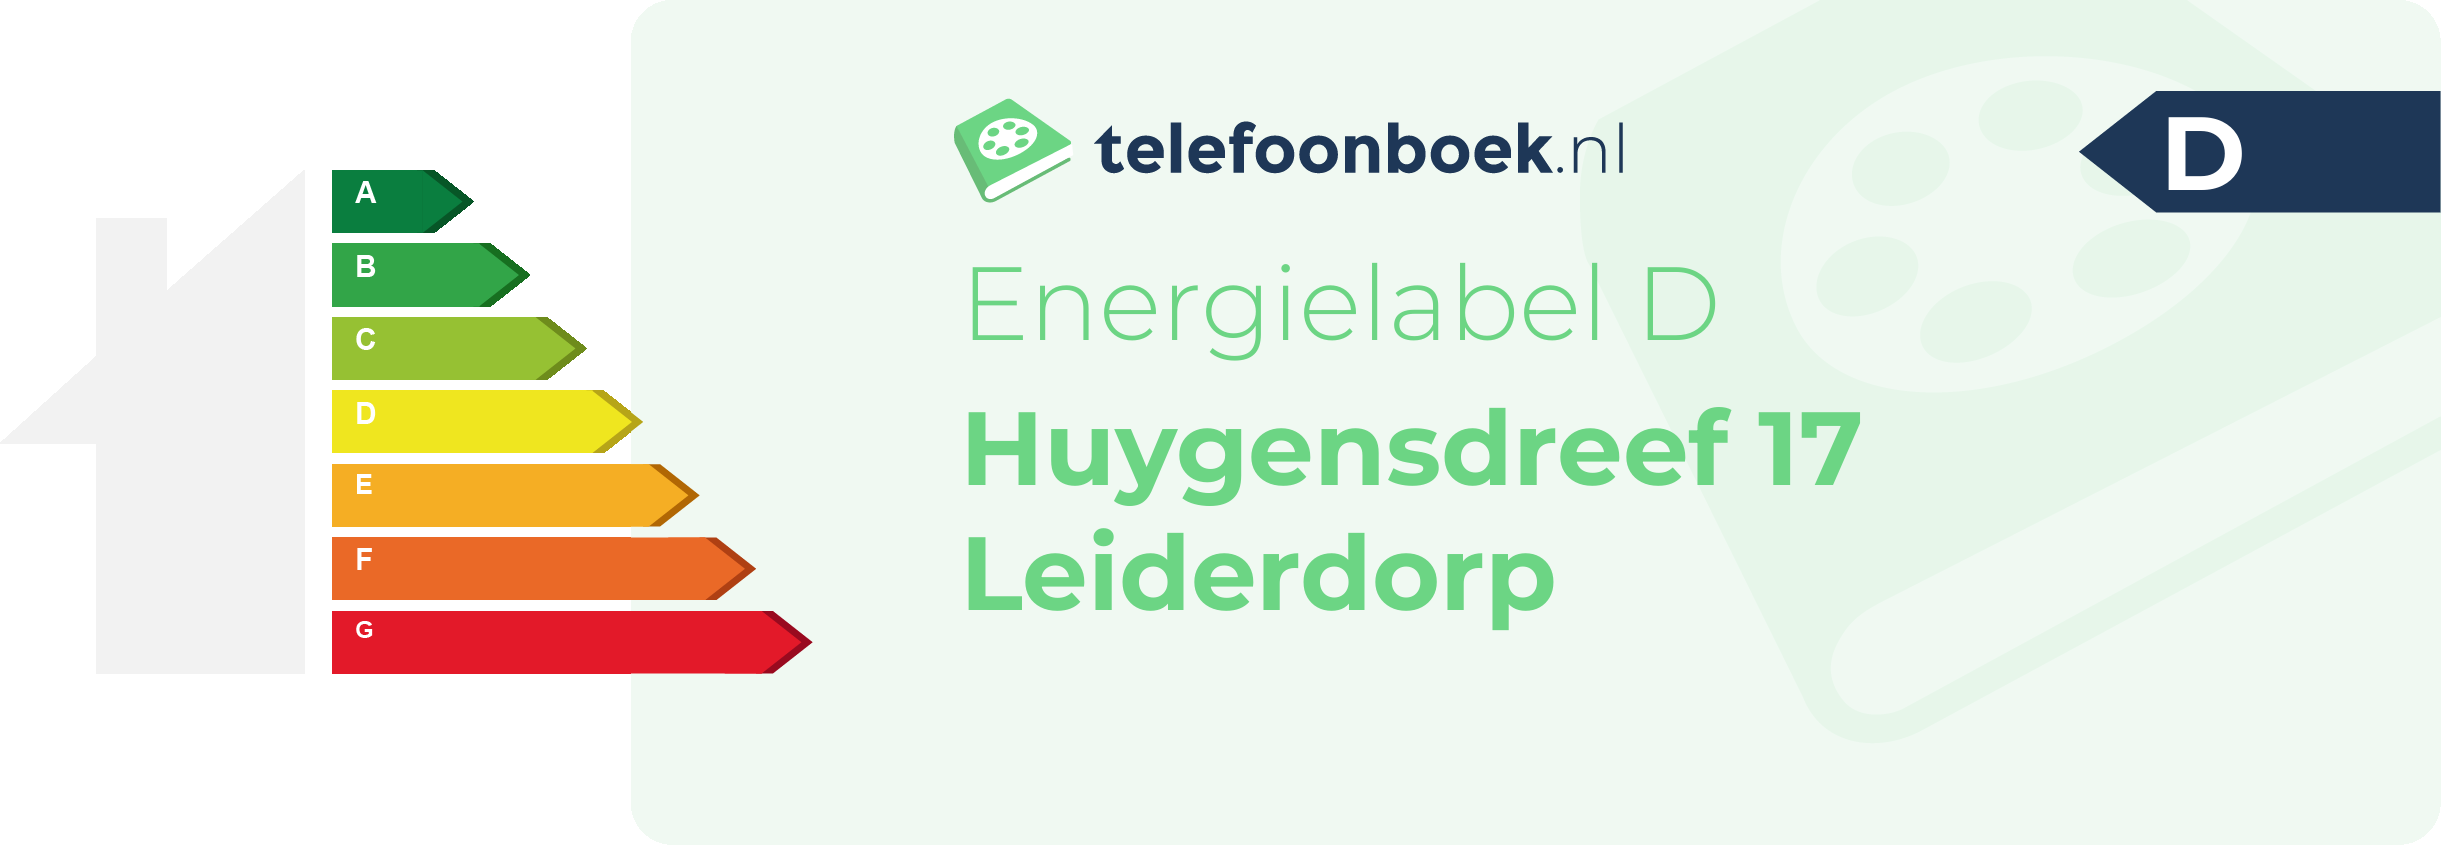 Energielabel Huygensdreef 17 Leiderdorp